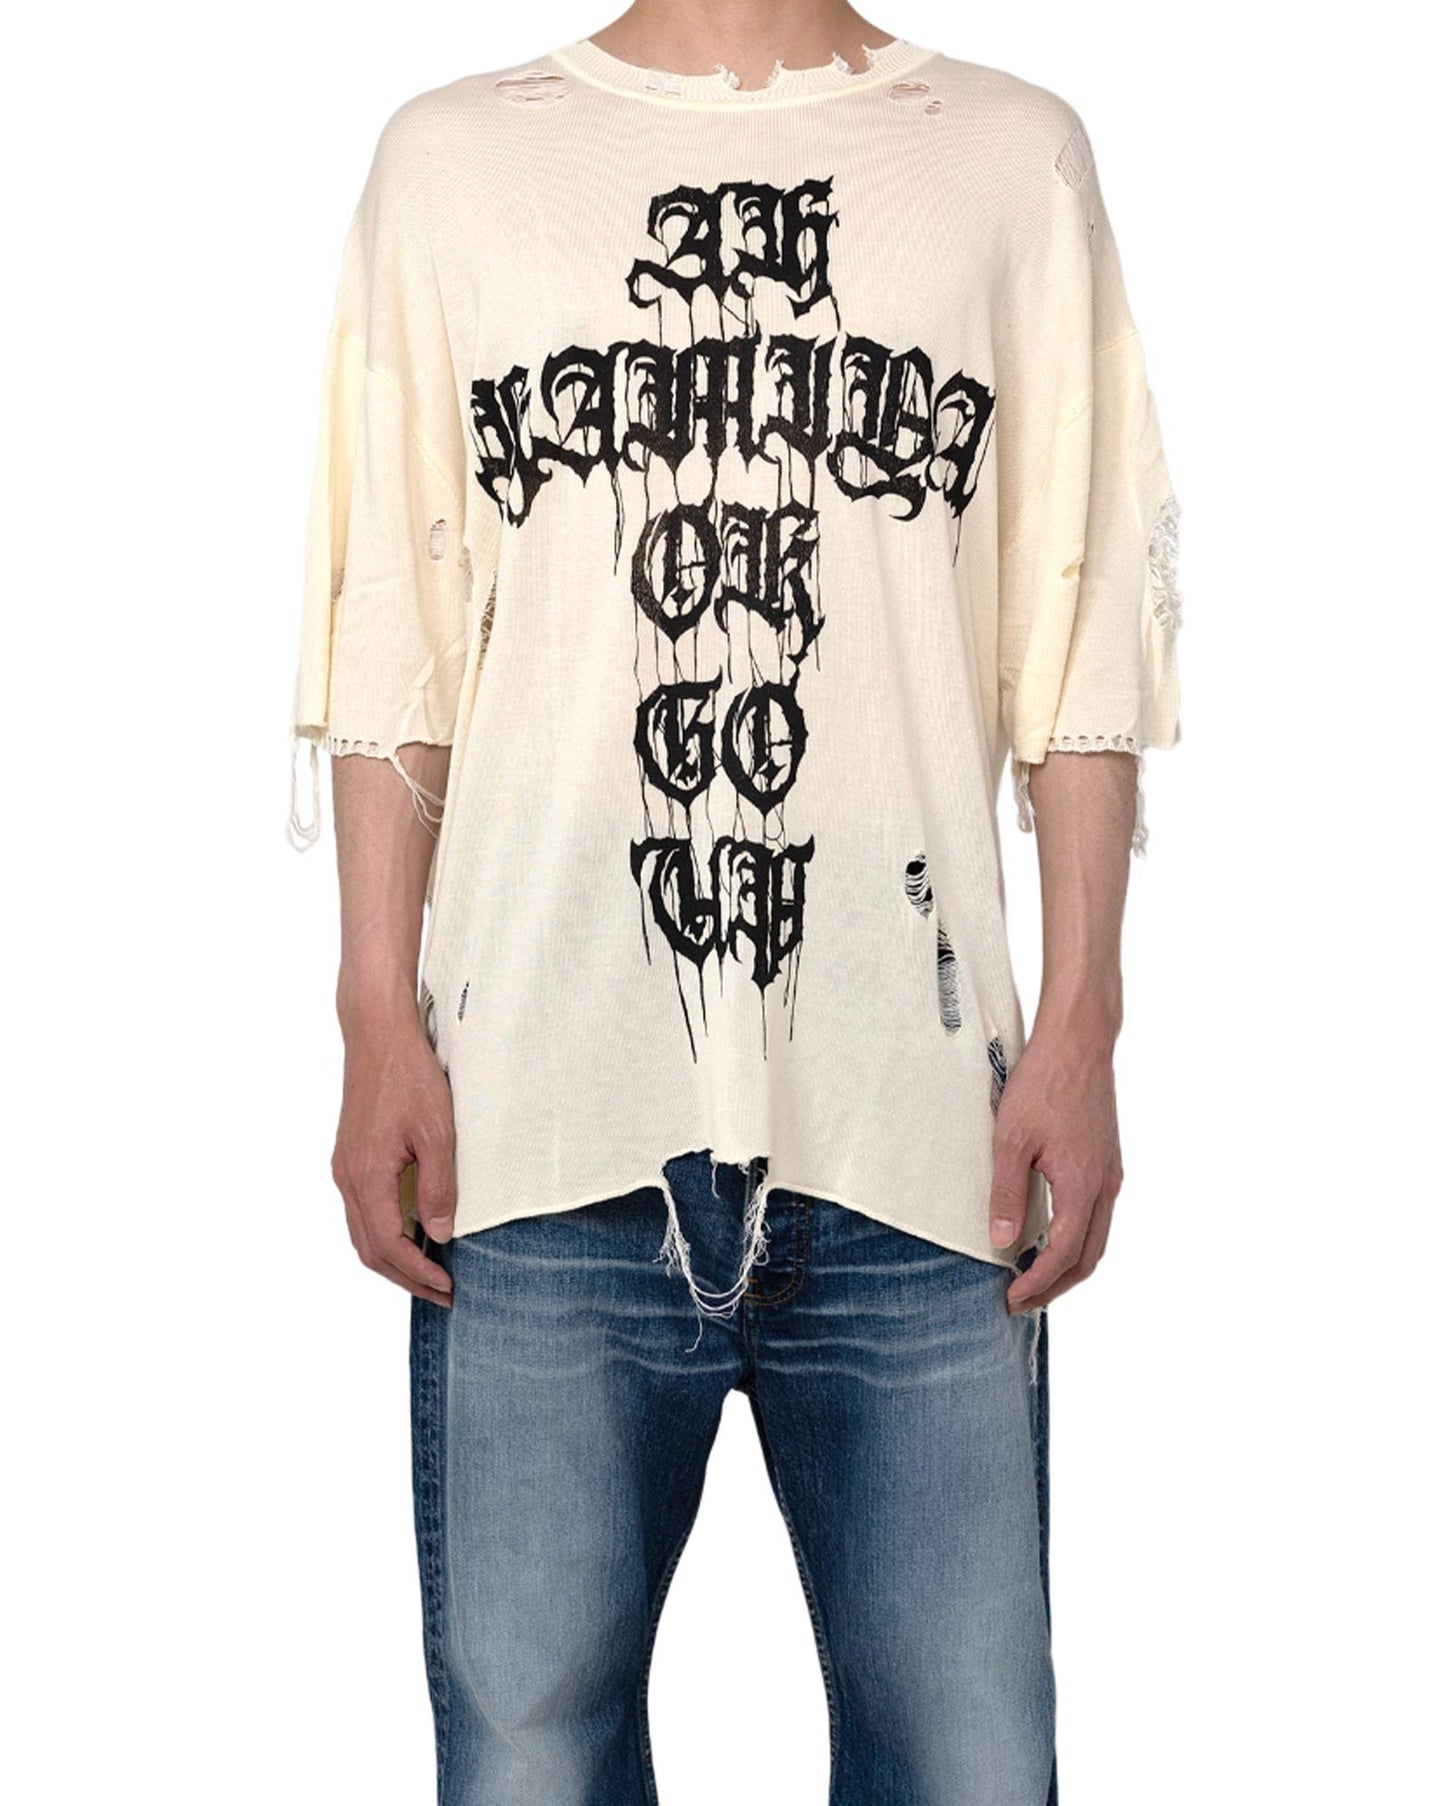 カミヤ/Printed Knit Tee/G12TS051/ニットTシャツ/White